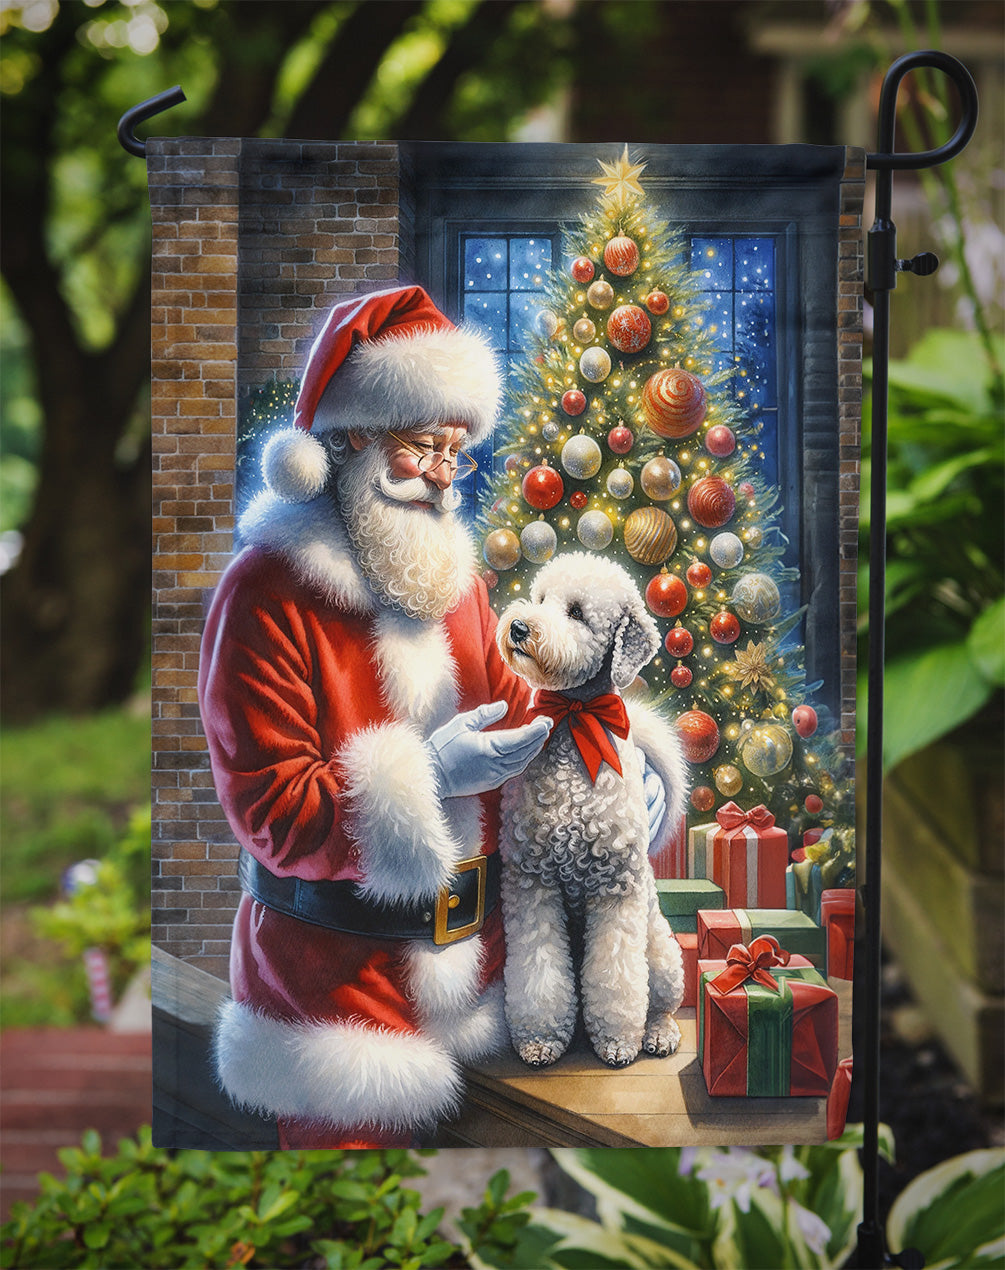 Bedlington Terrier and Santa Claus Garden Flag